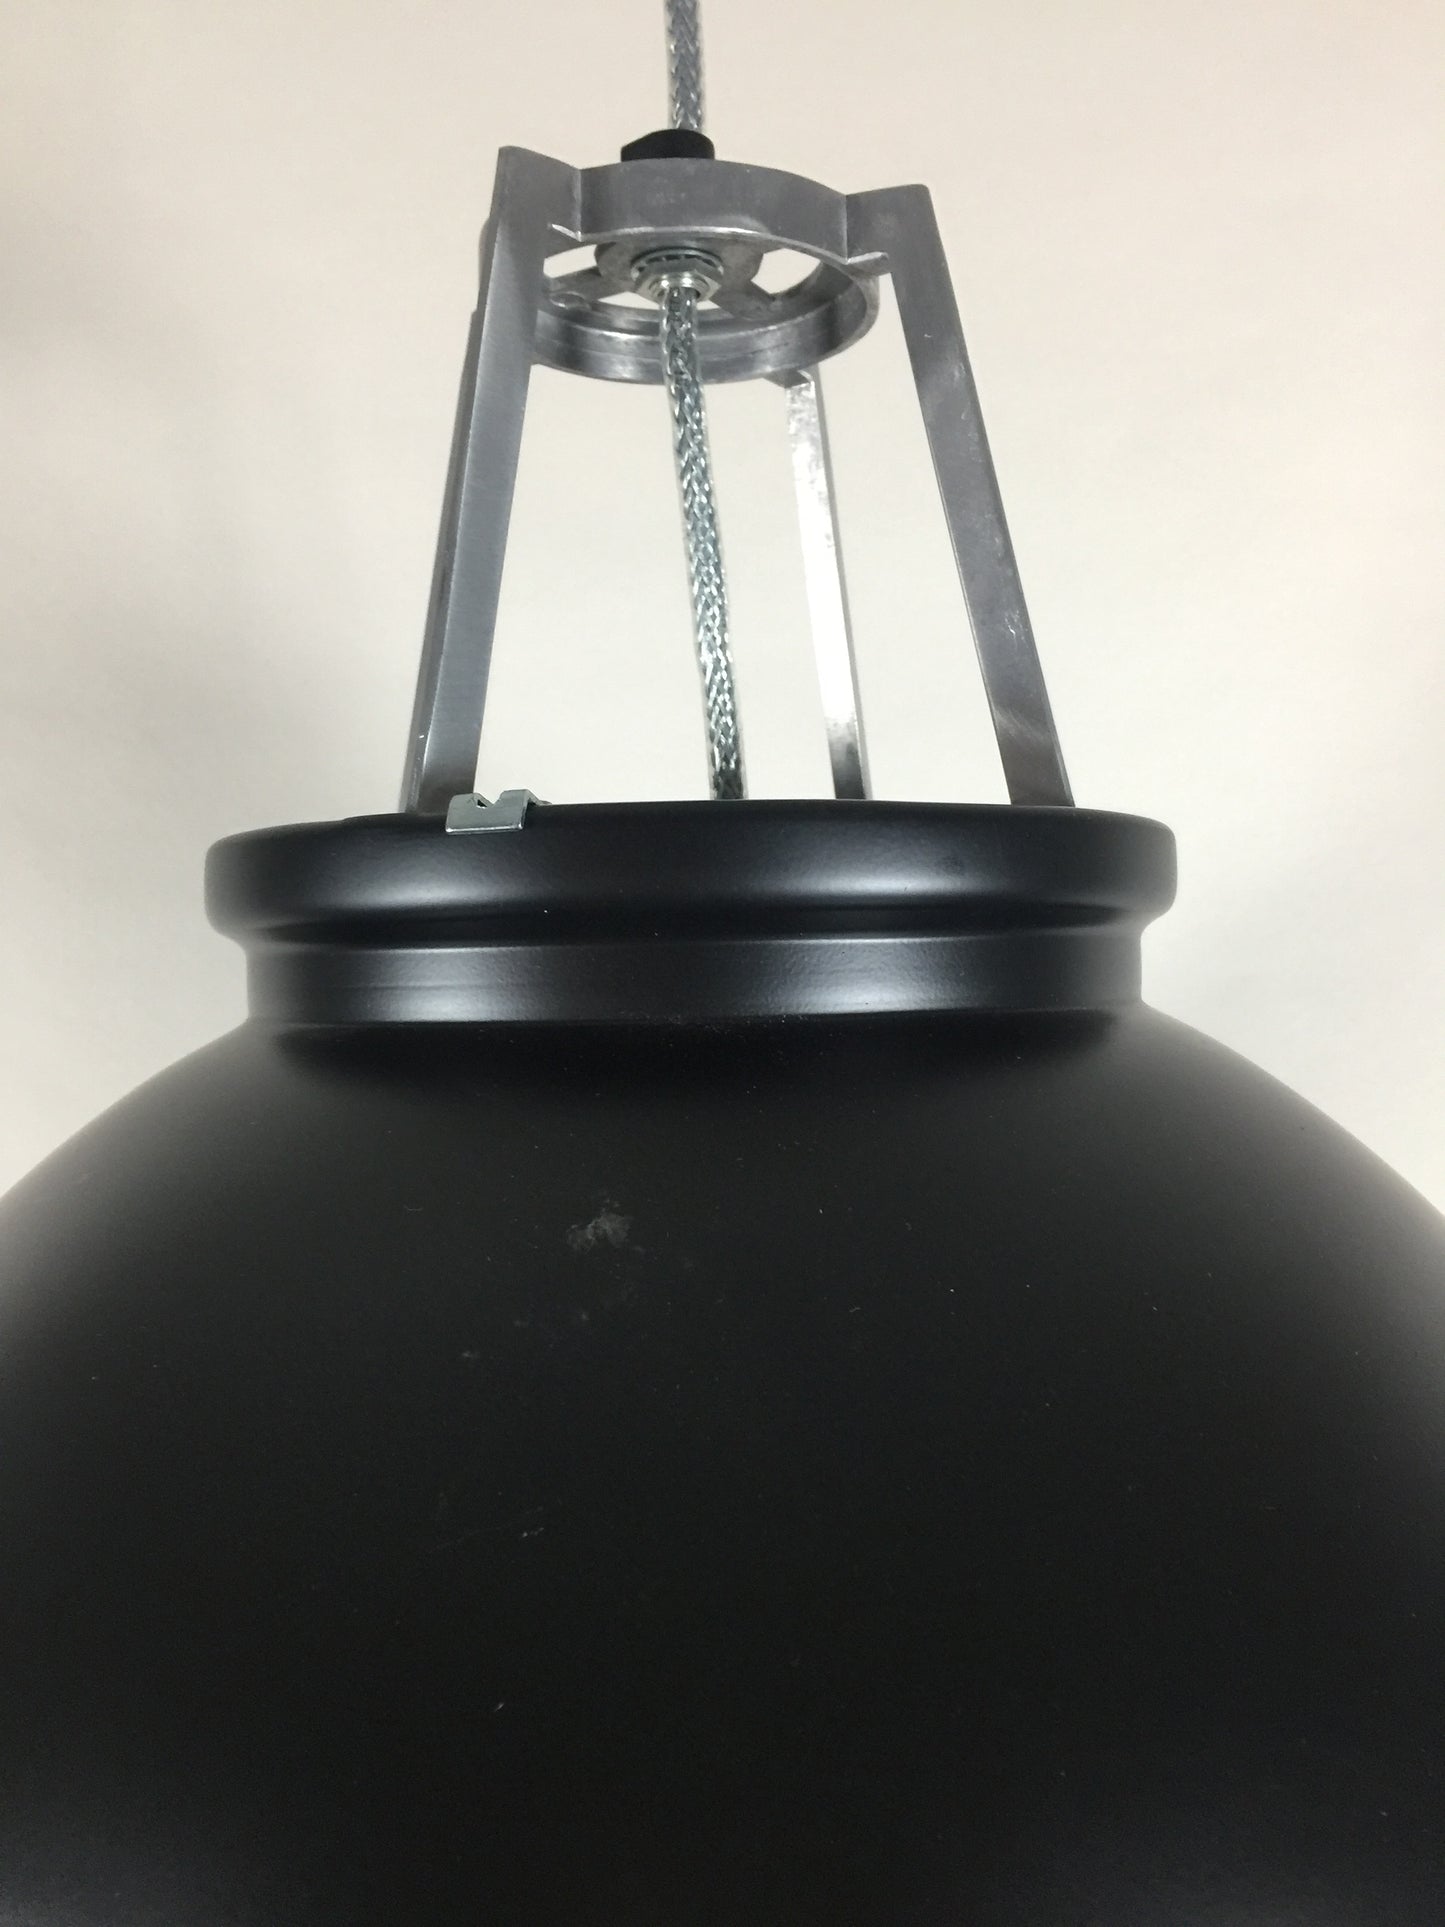 Original BTC lampe - Titan stor model med sandblæst glas